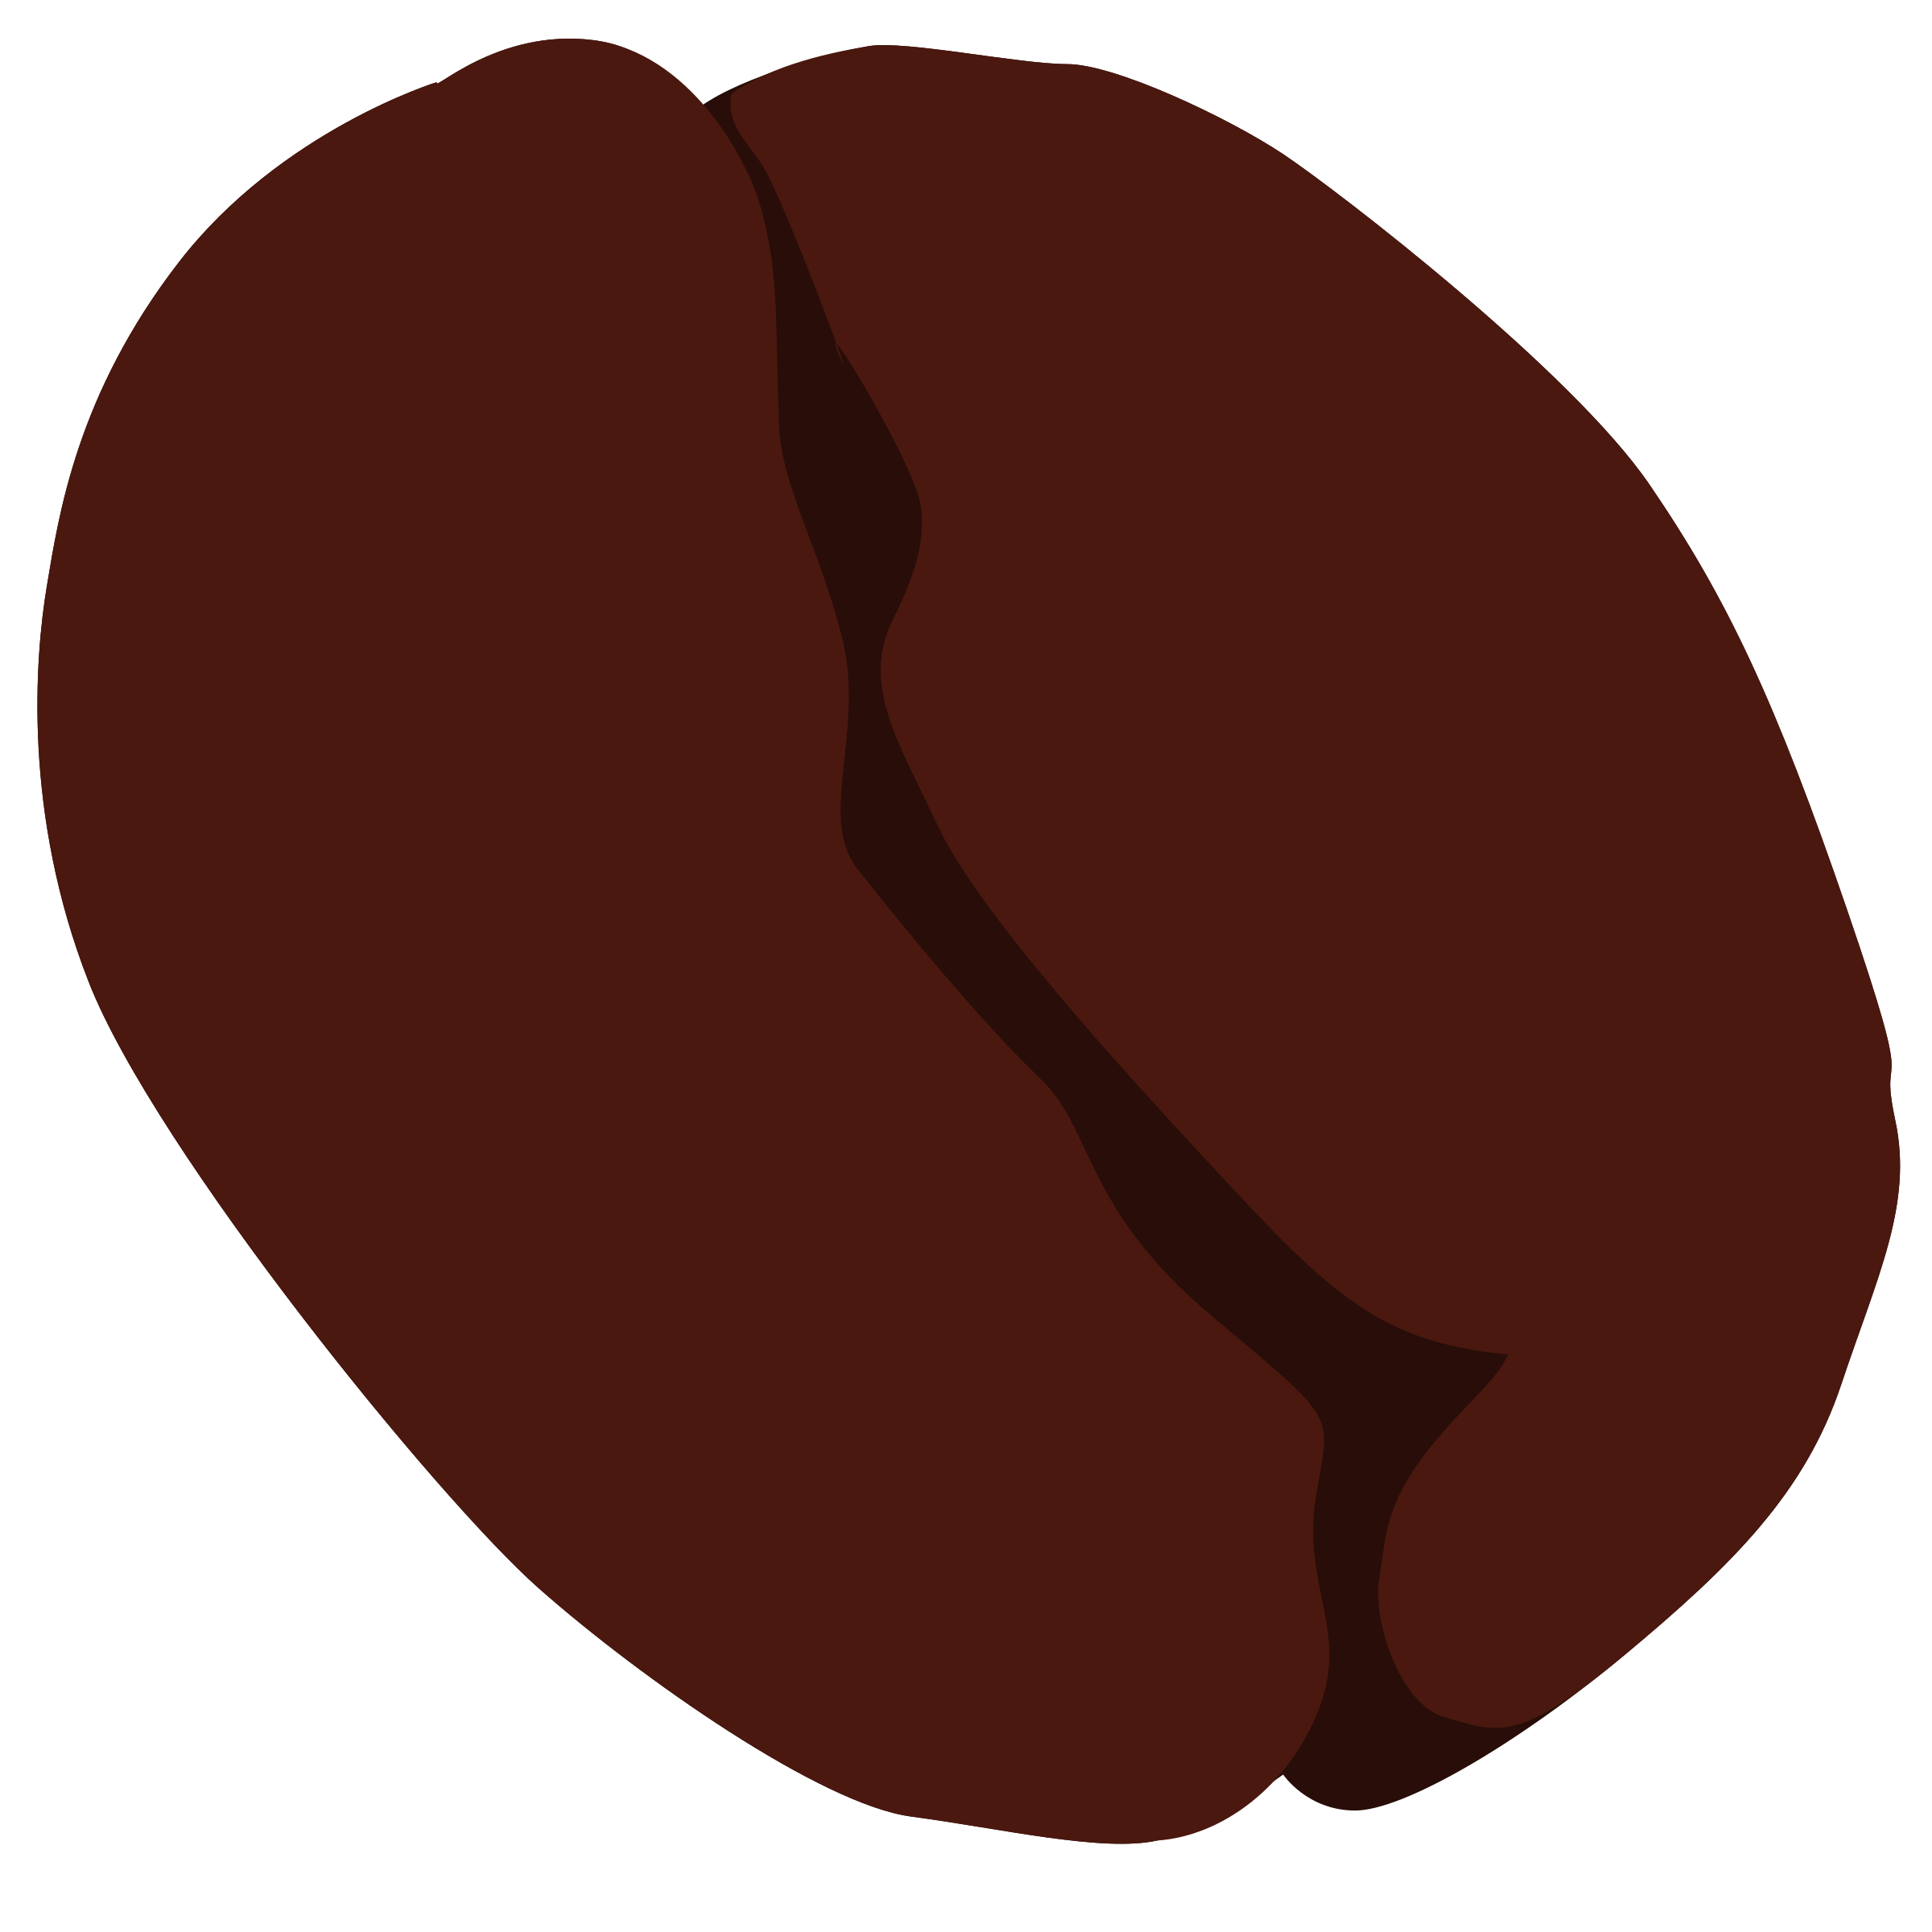 Coffee bean vector clip art 